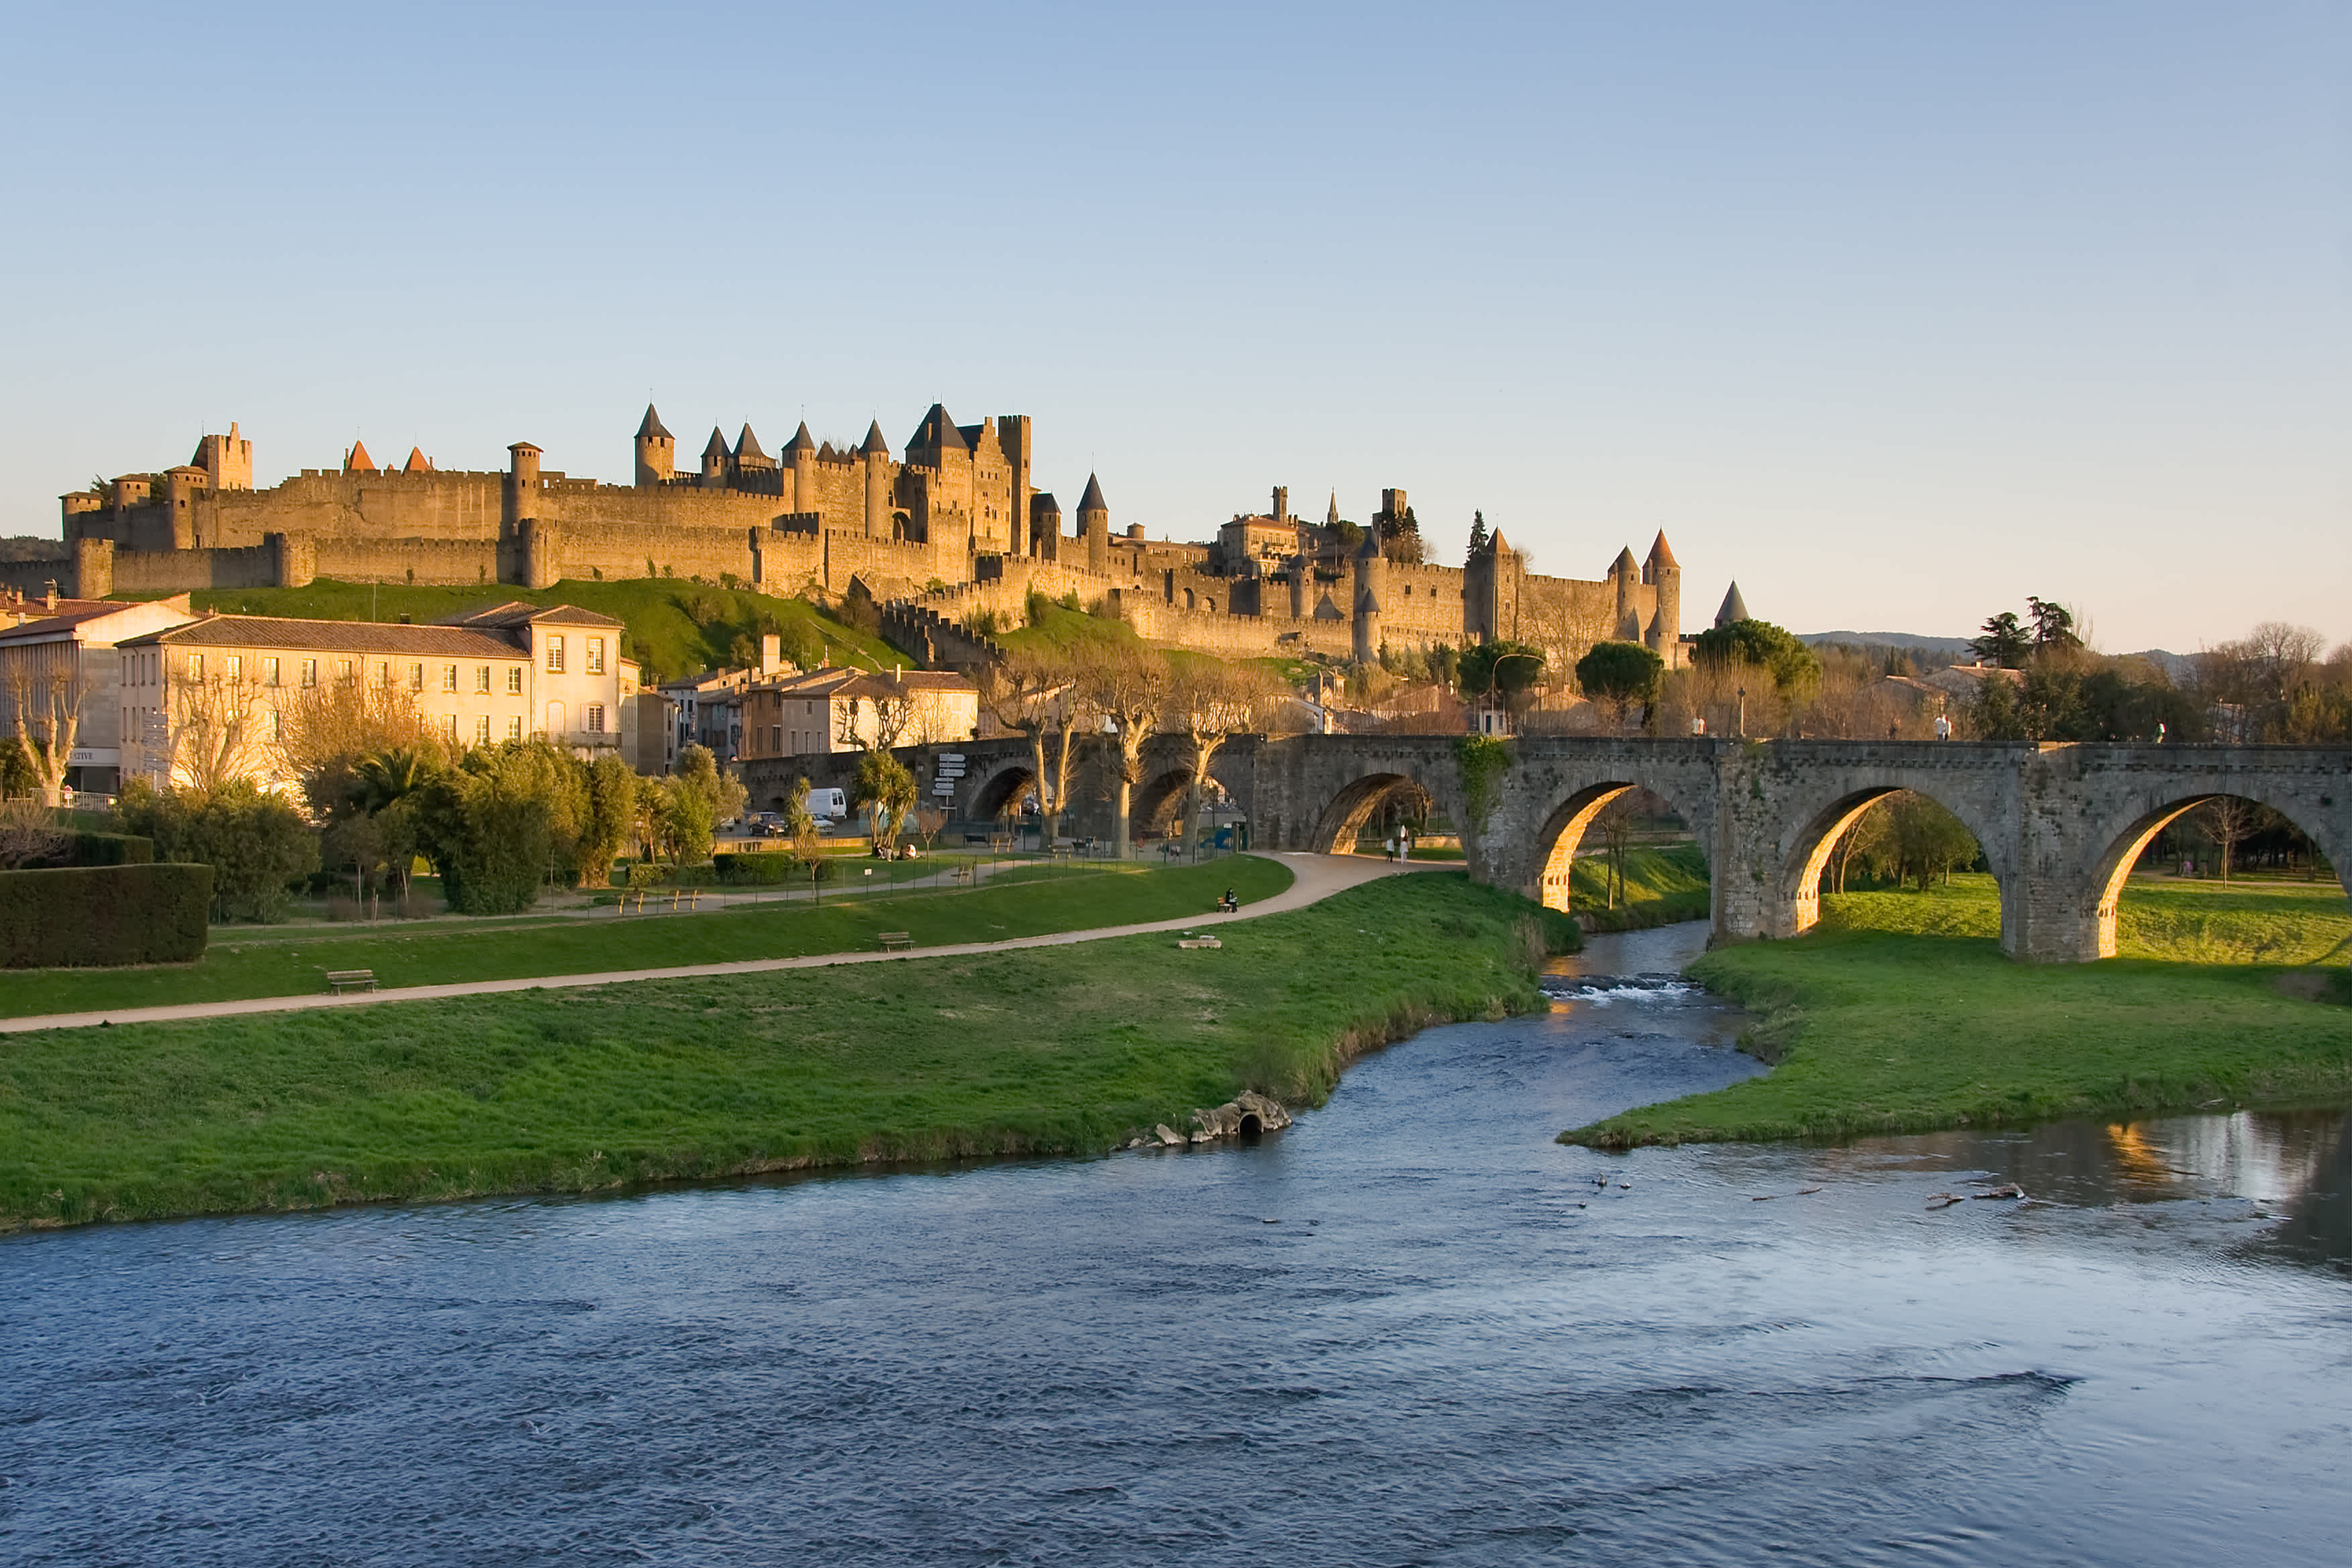 Découvrez une Cité Médiévale incroyable pendant votre séjour à Carcassonne.